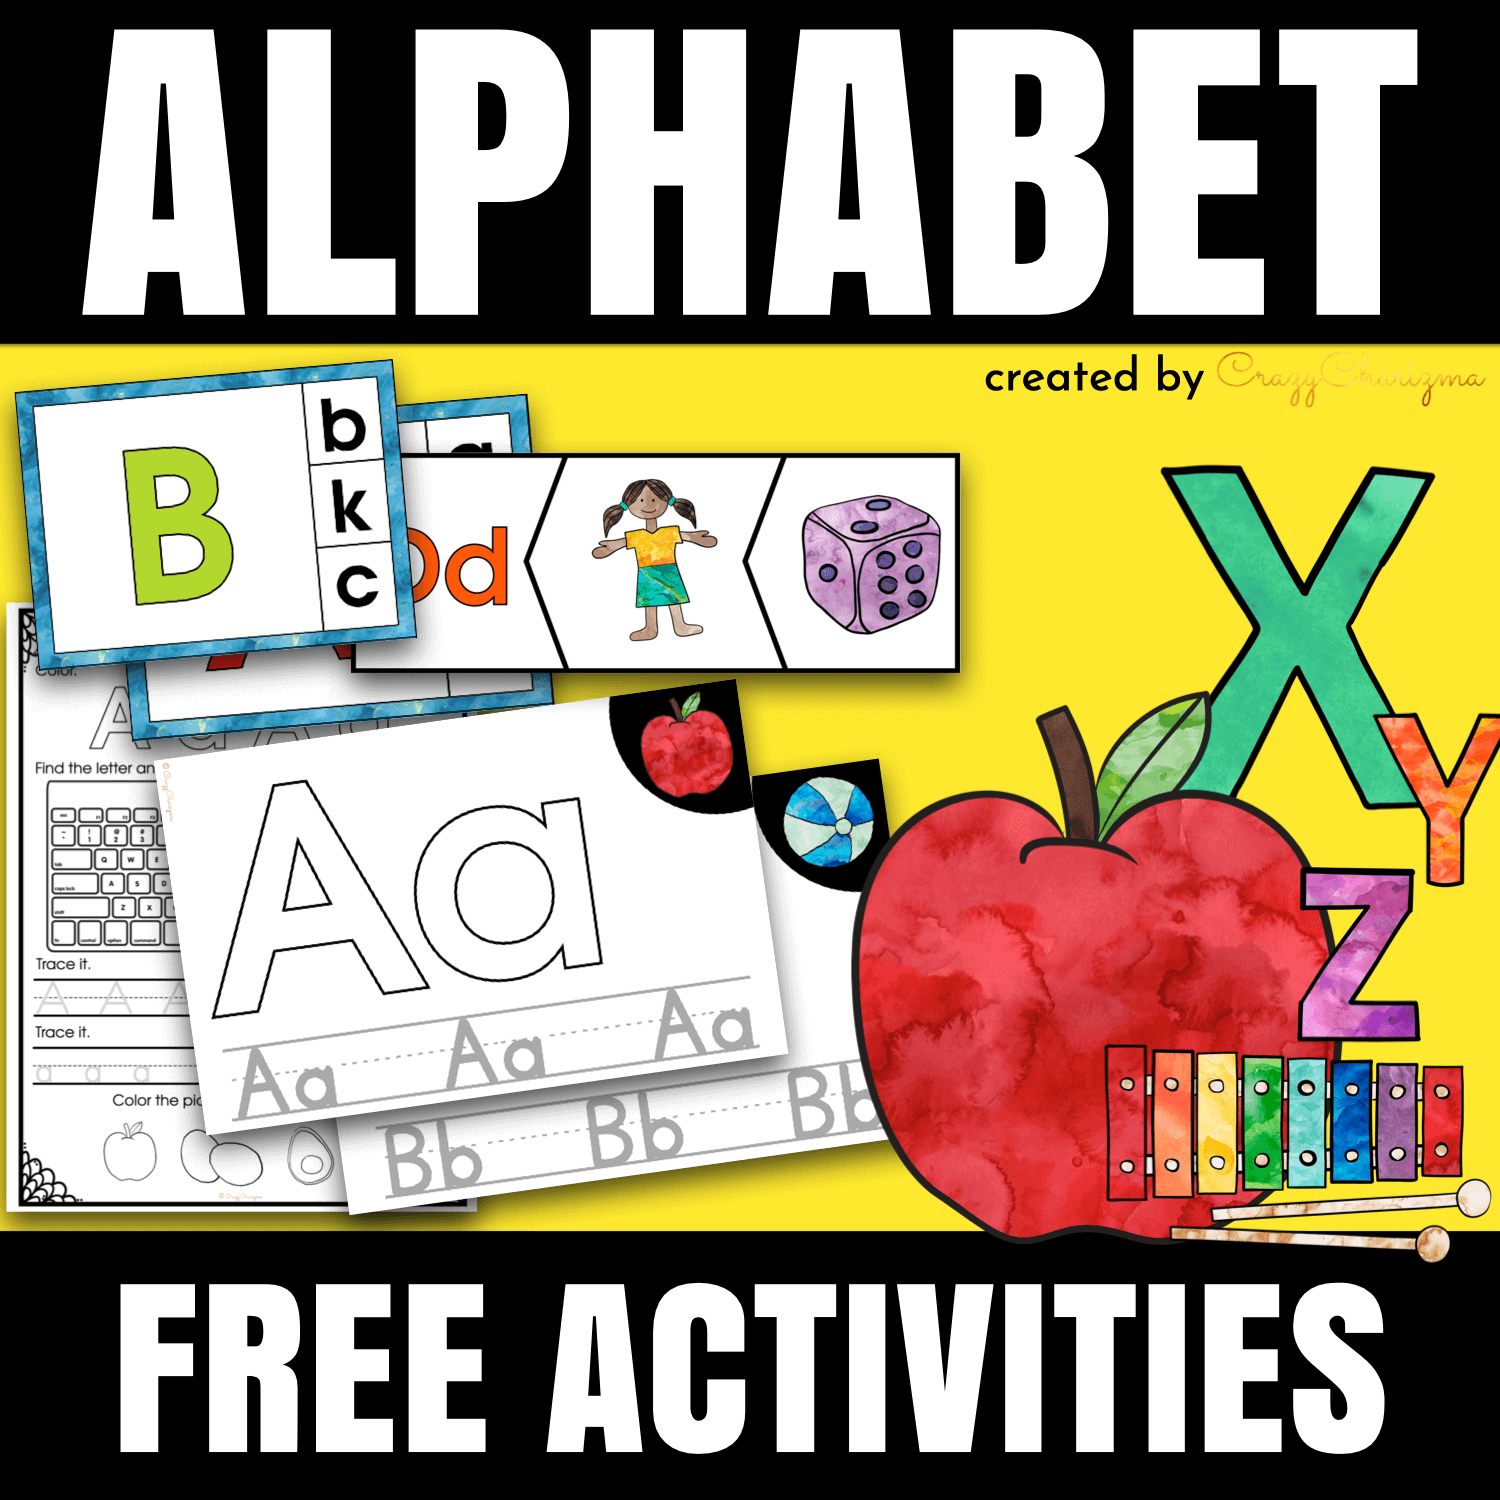 Alphabet activities